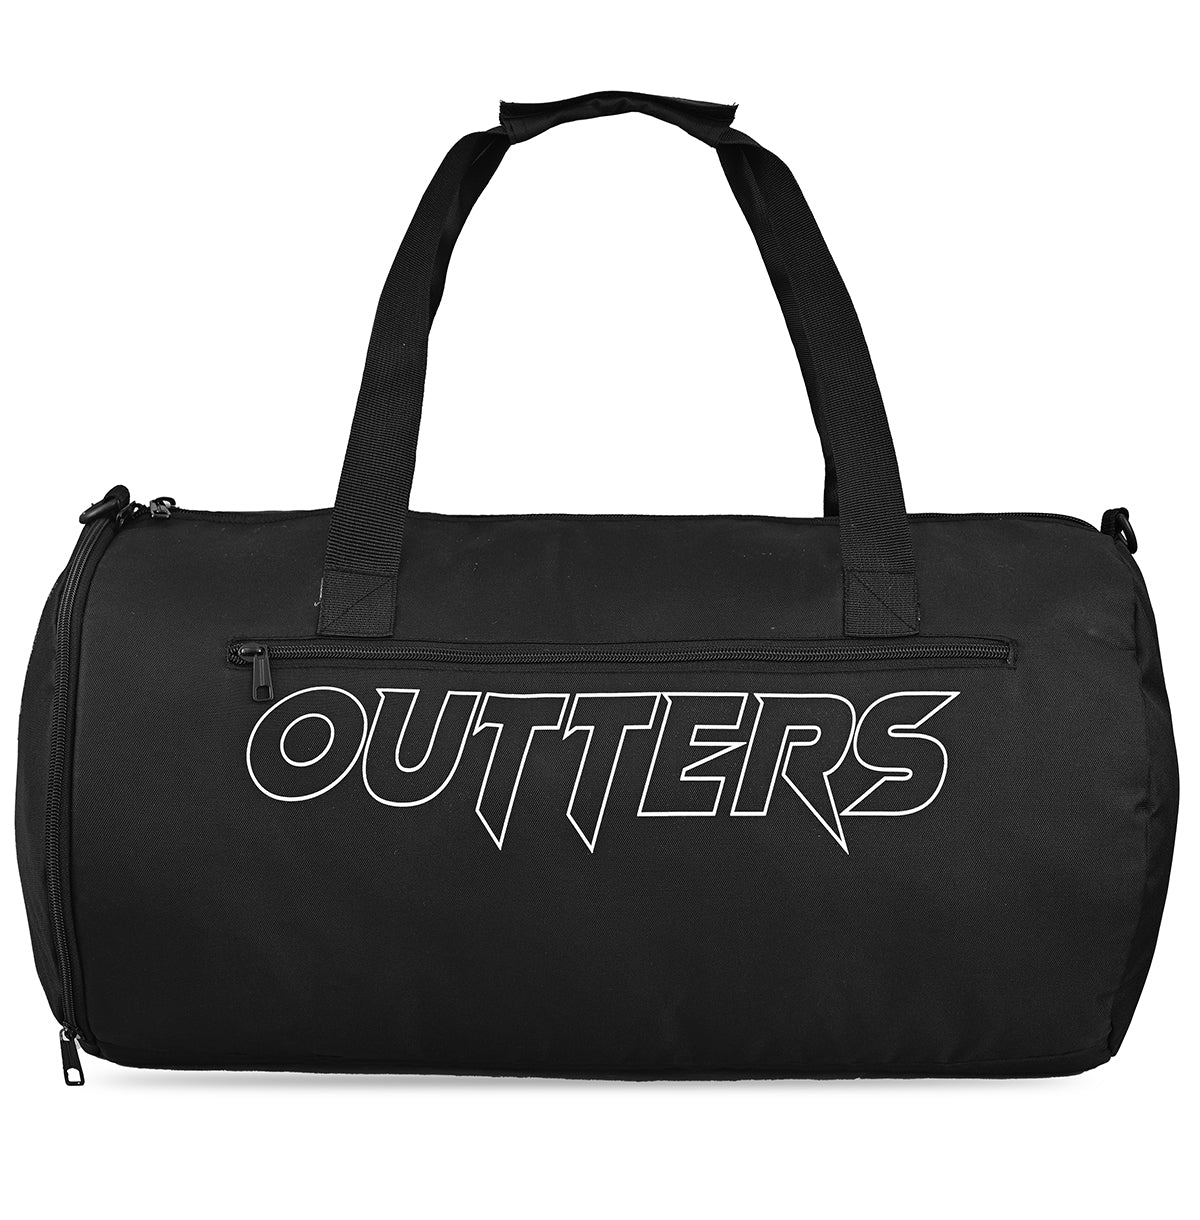 Outters BIG WIG Gym Bag , Duffle Bag  Waterproof Black